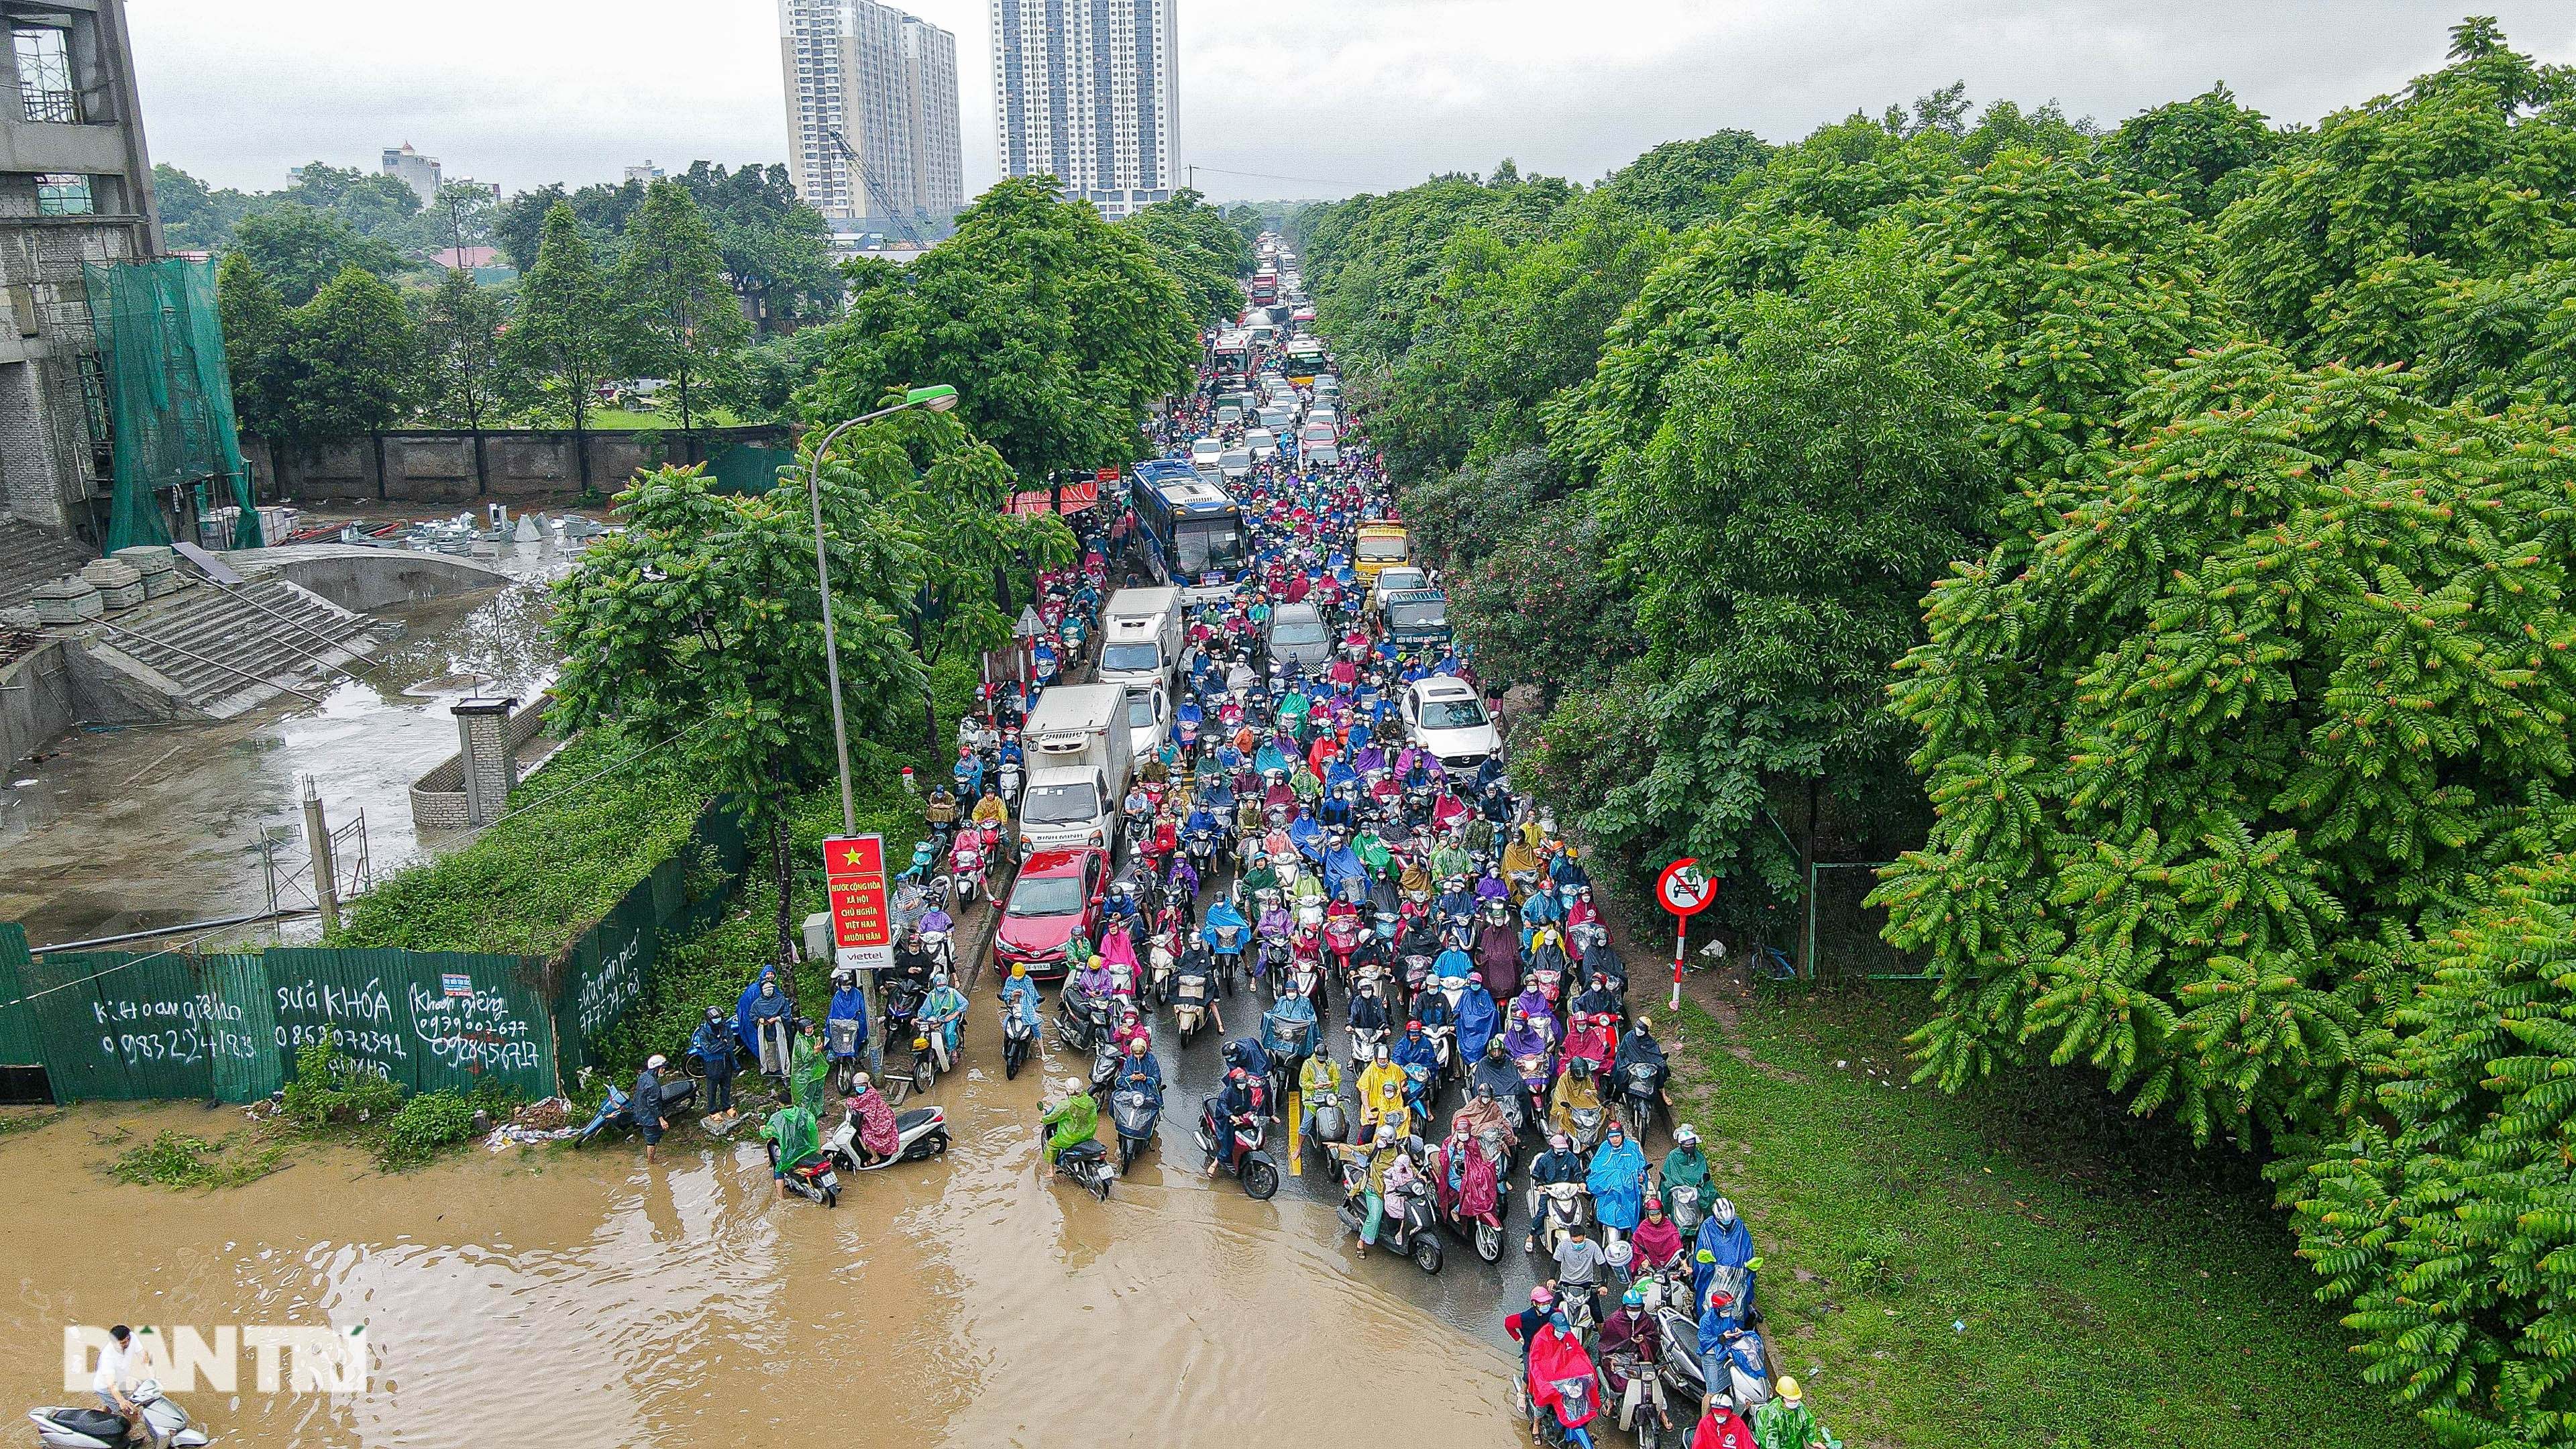 Đường gom đại lộ Thăng Long ngập như sông, đoàn xe ùn tắc cả km - 2